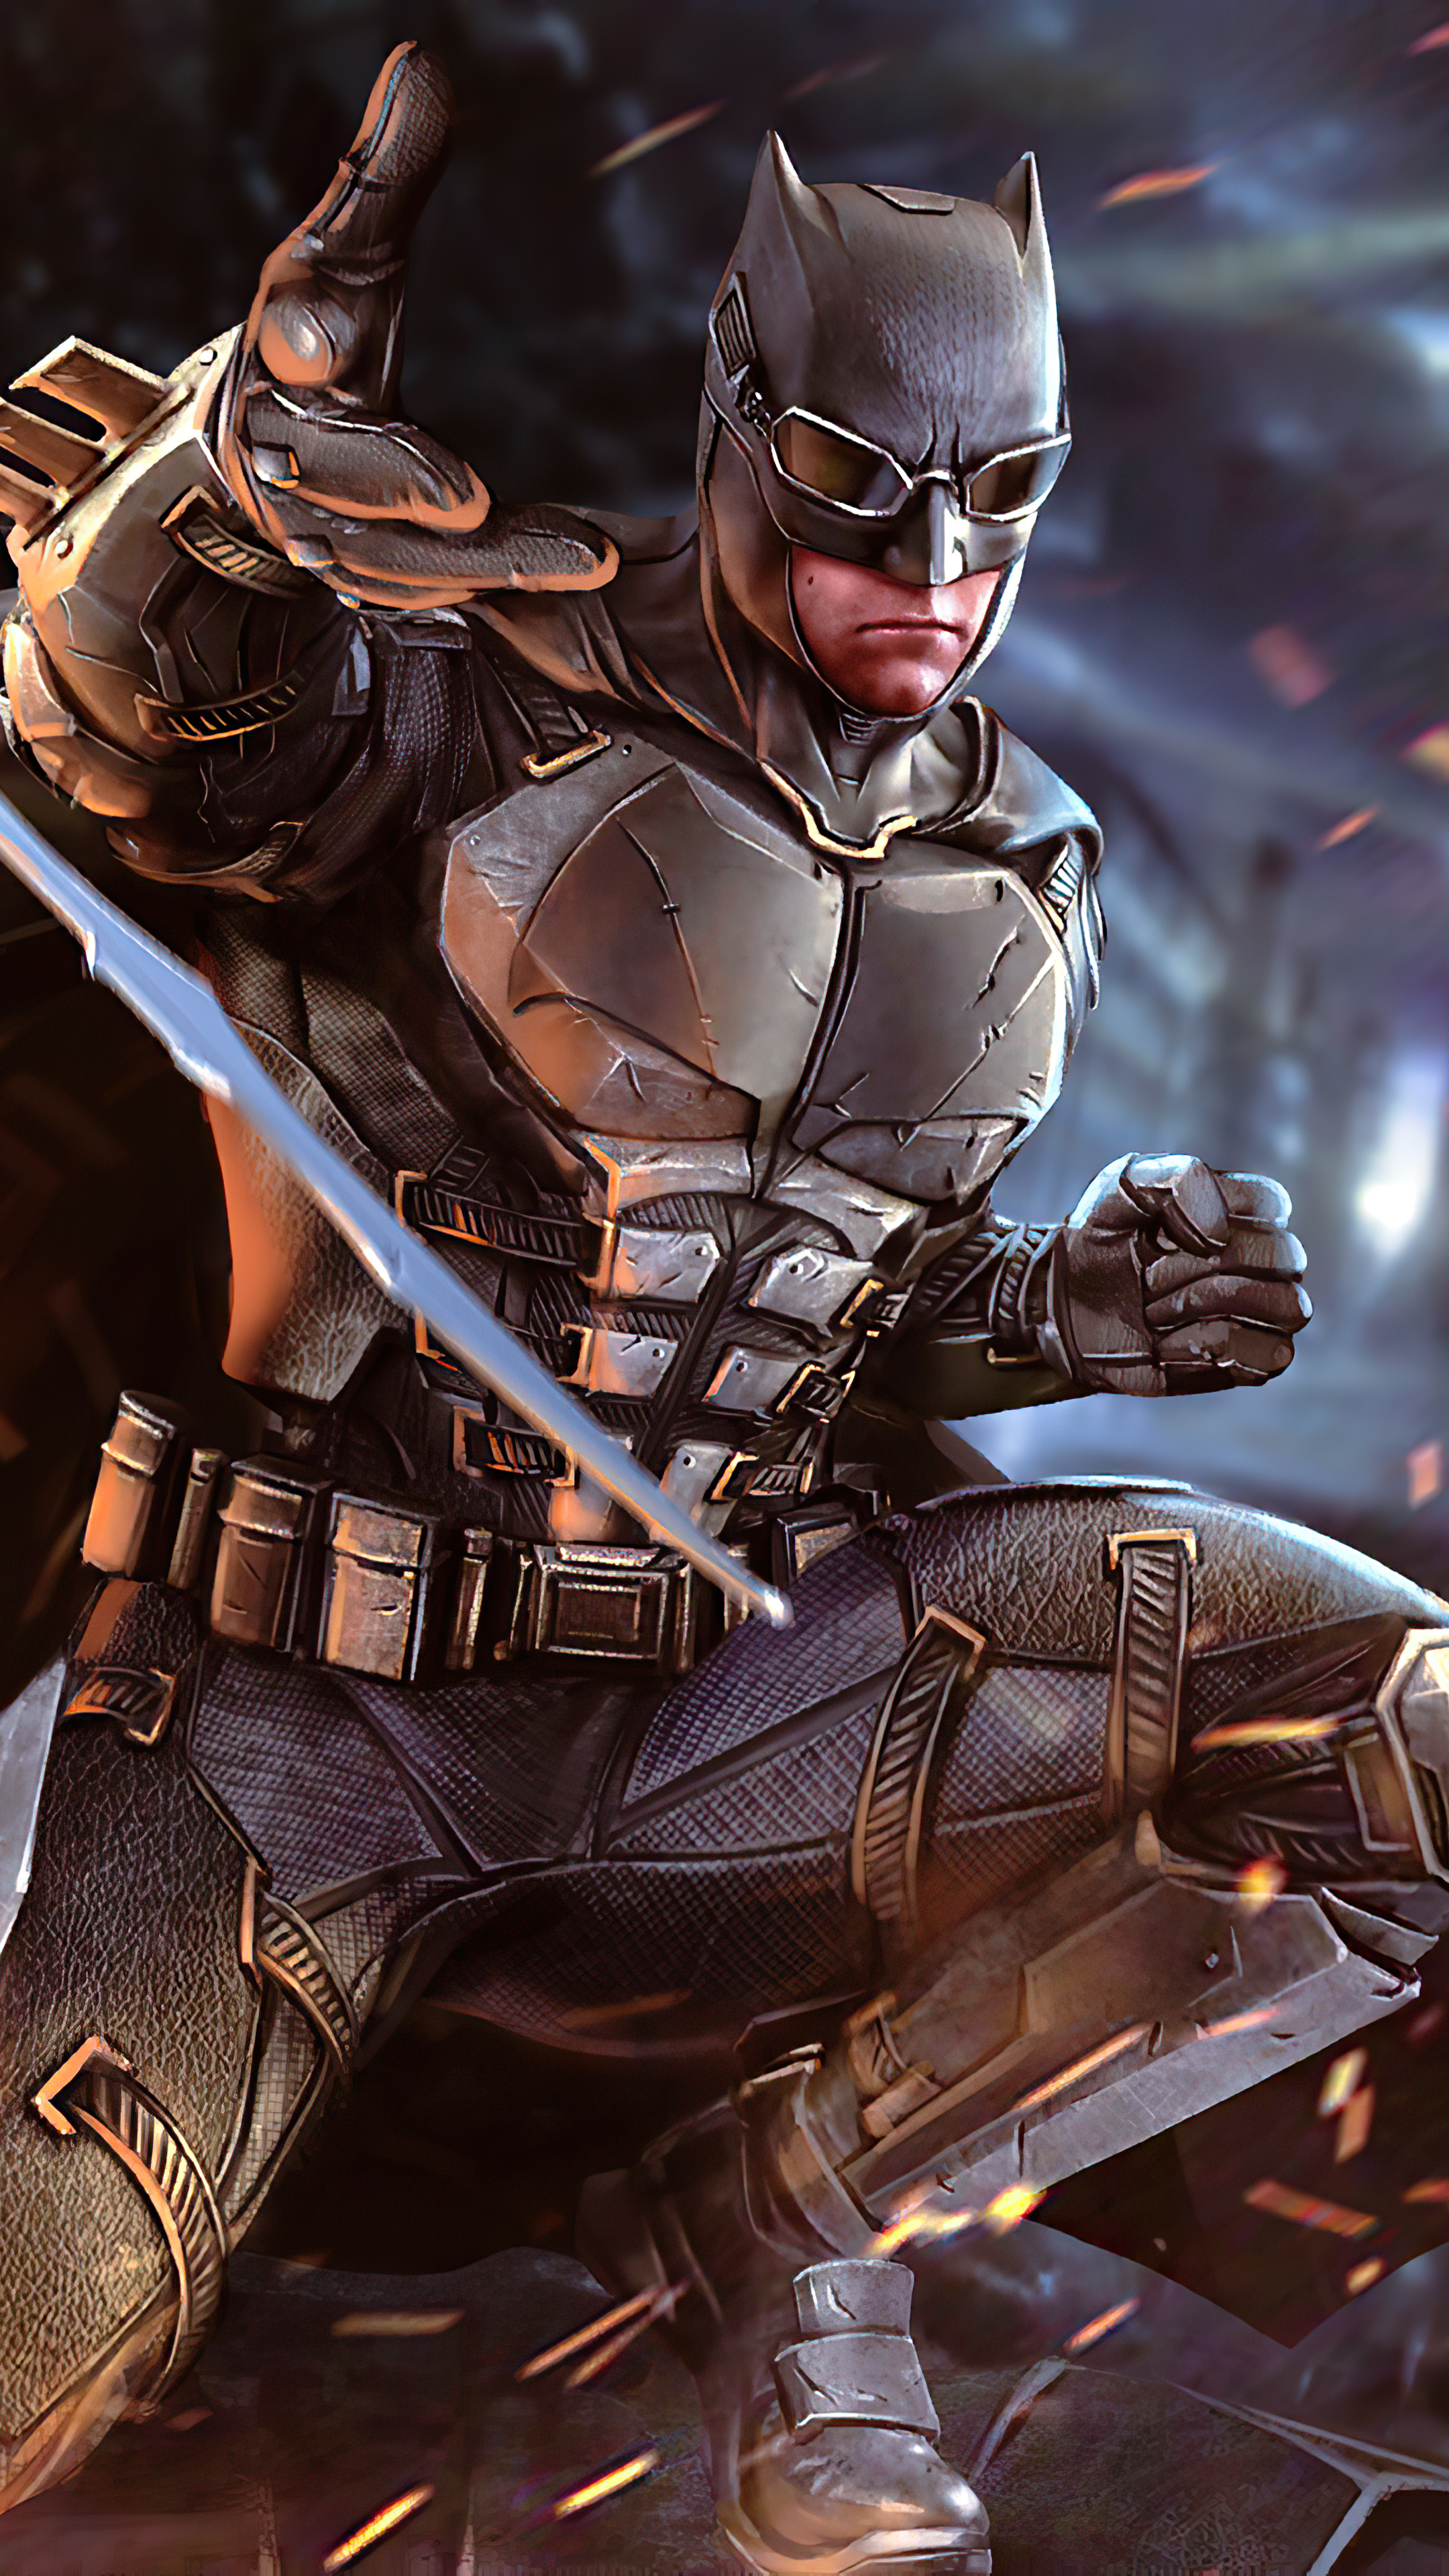 Hình nền Batman: Cùng ngắm nhìn hình nền Batman đầy bí ẩn và đầy sức mạnh. Những hình ảnh này sẽ khiến bạn thấy như mình được trở thành một siêu anh hùng. Tận hưởng không khí cuồng nhiệt của Gotham City và truyền cảm hứng cho cuộc đời của bạn.